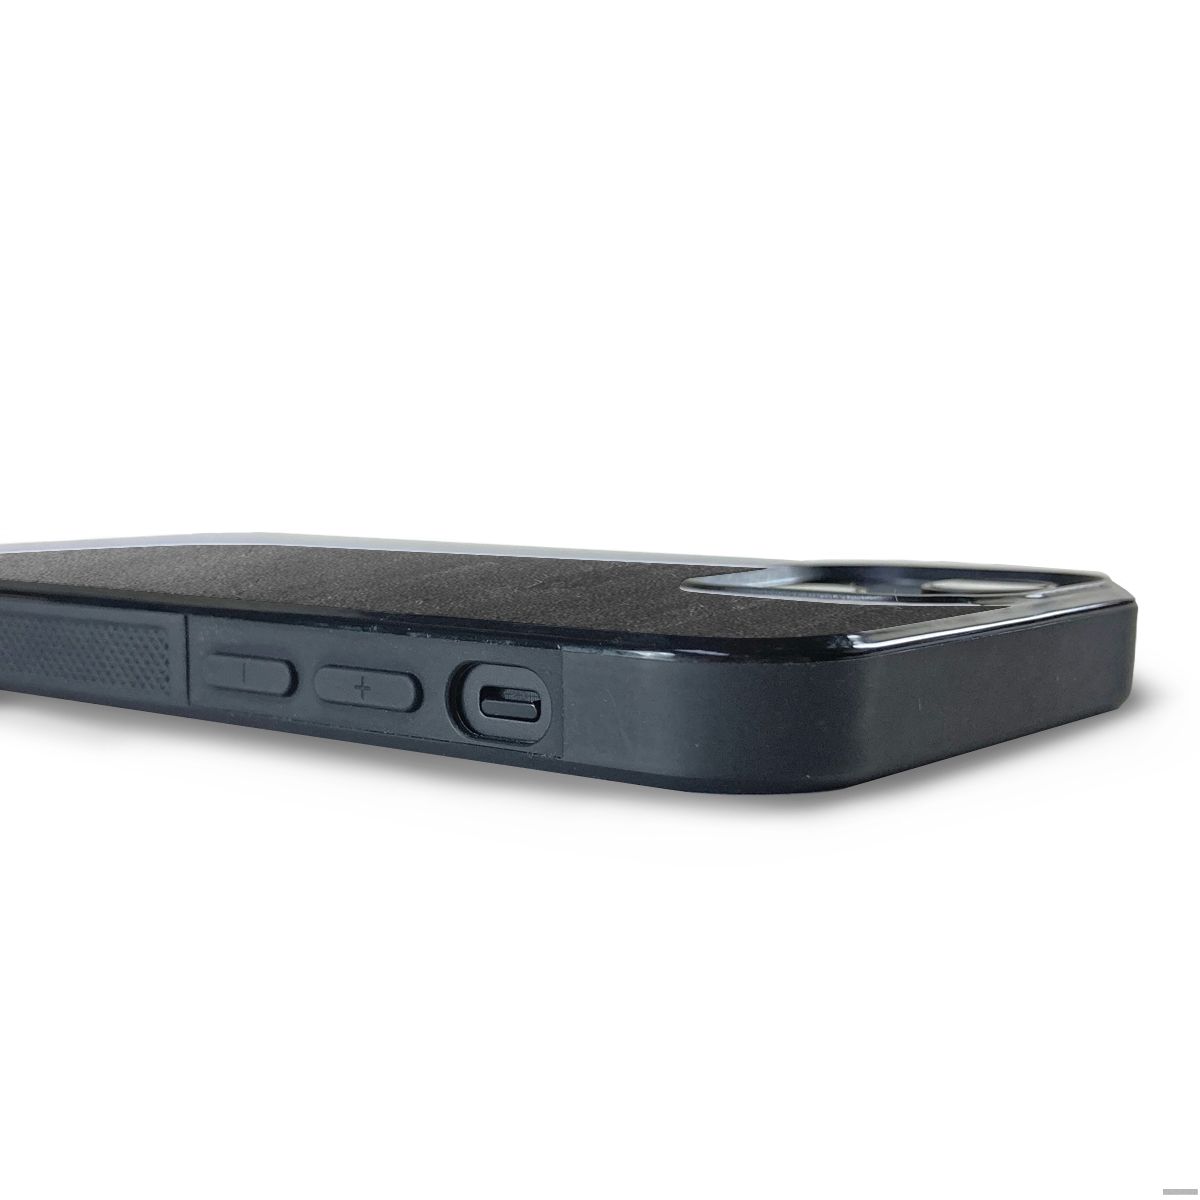 iPhone 13 —  Stone Explorer Black Case